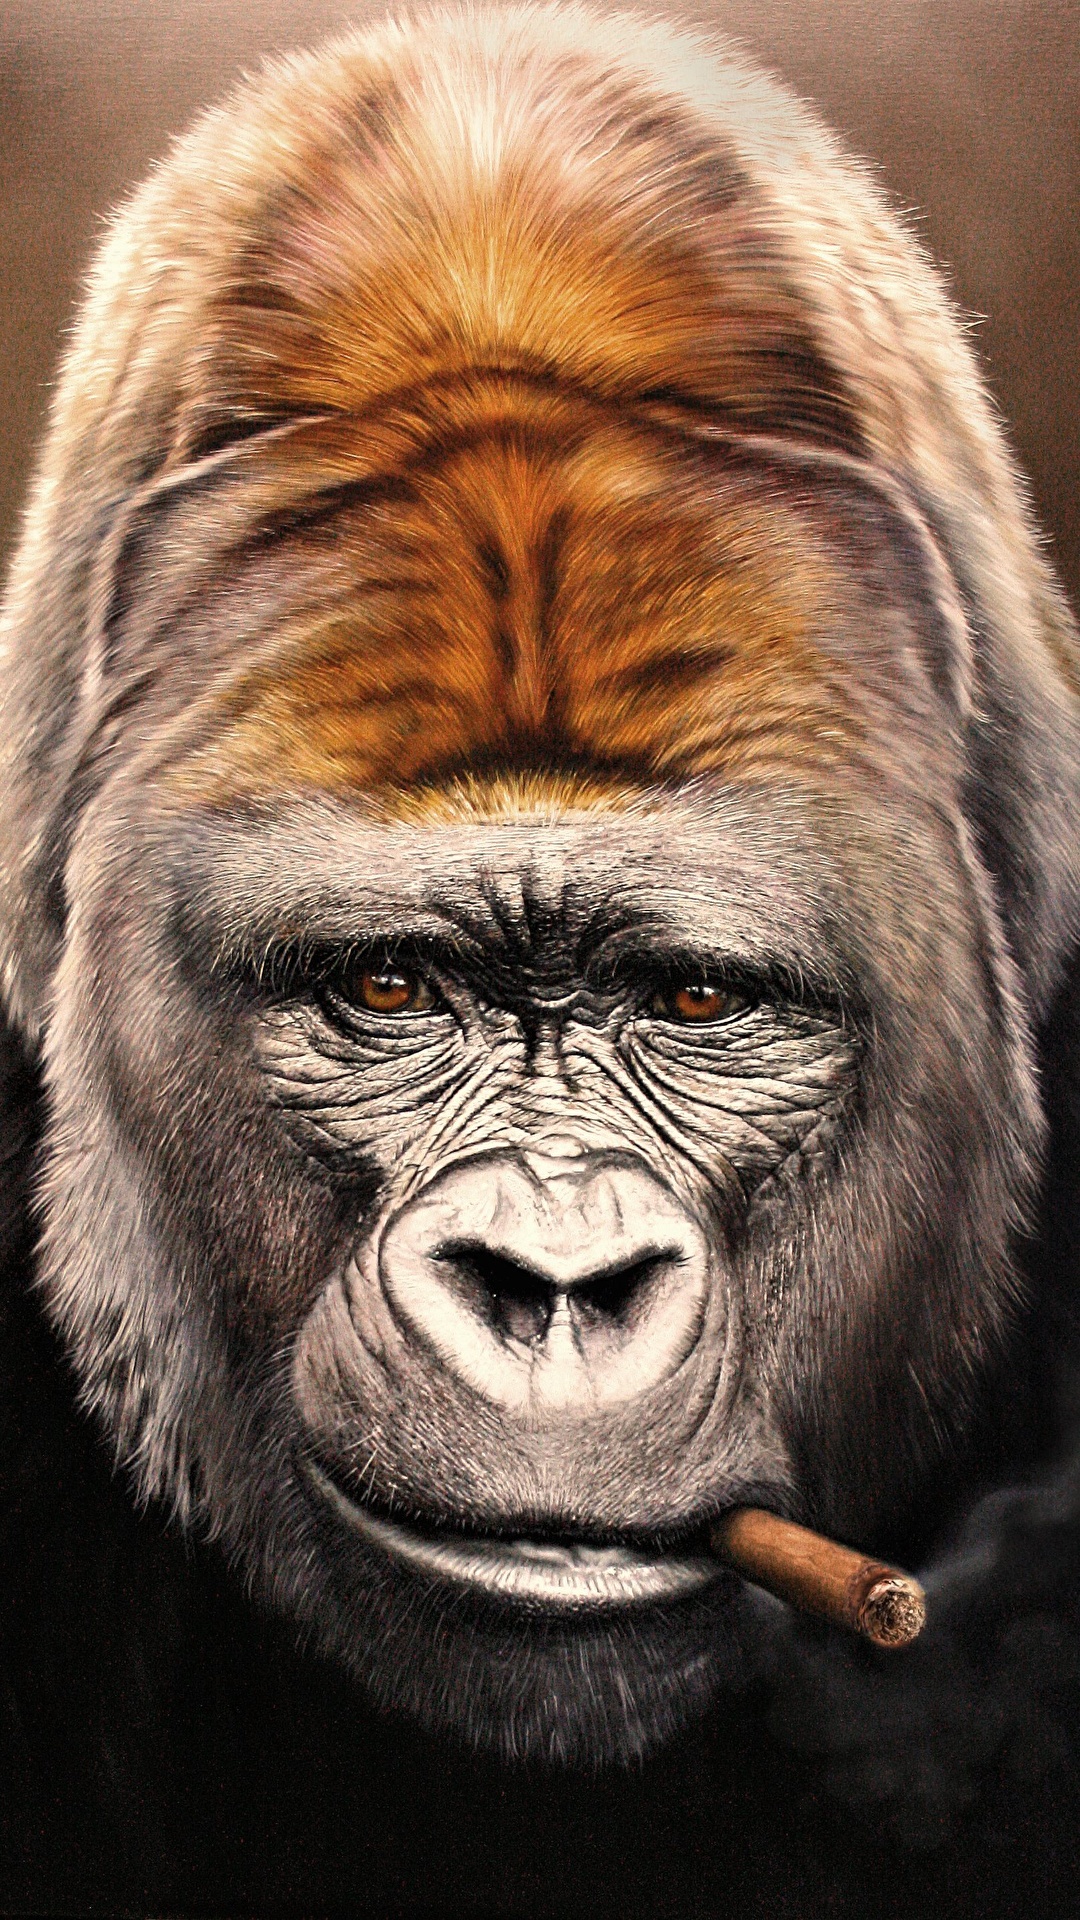 壁紙 1080x19 サル Gorilla 動物のスナウト 凝視 葉巻 顔 動物 ダウンロード 写真